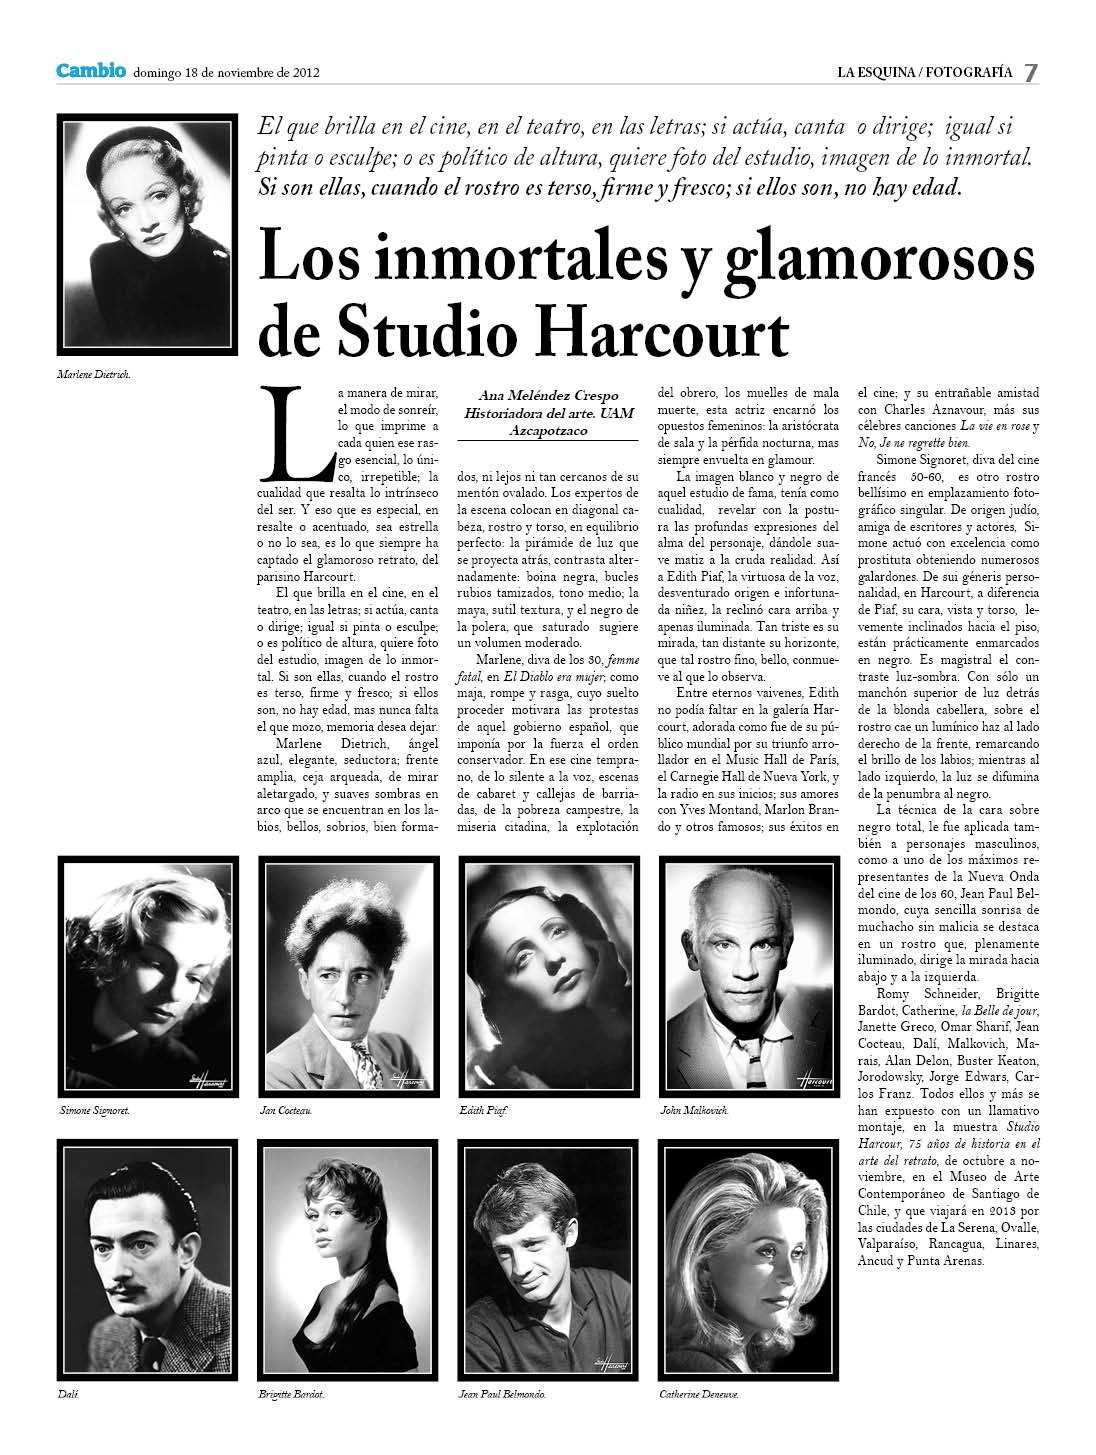 Los inmortales y glamorosos de Studio Harcourt